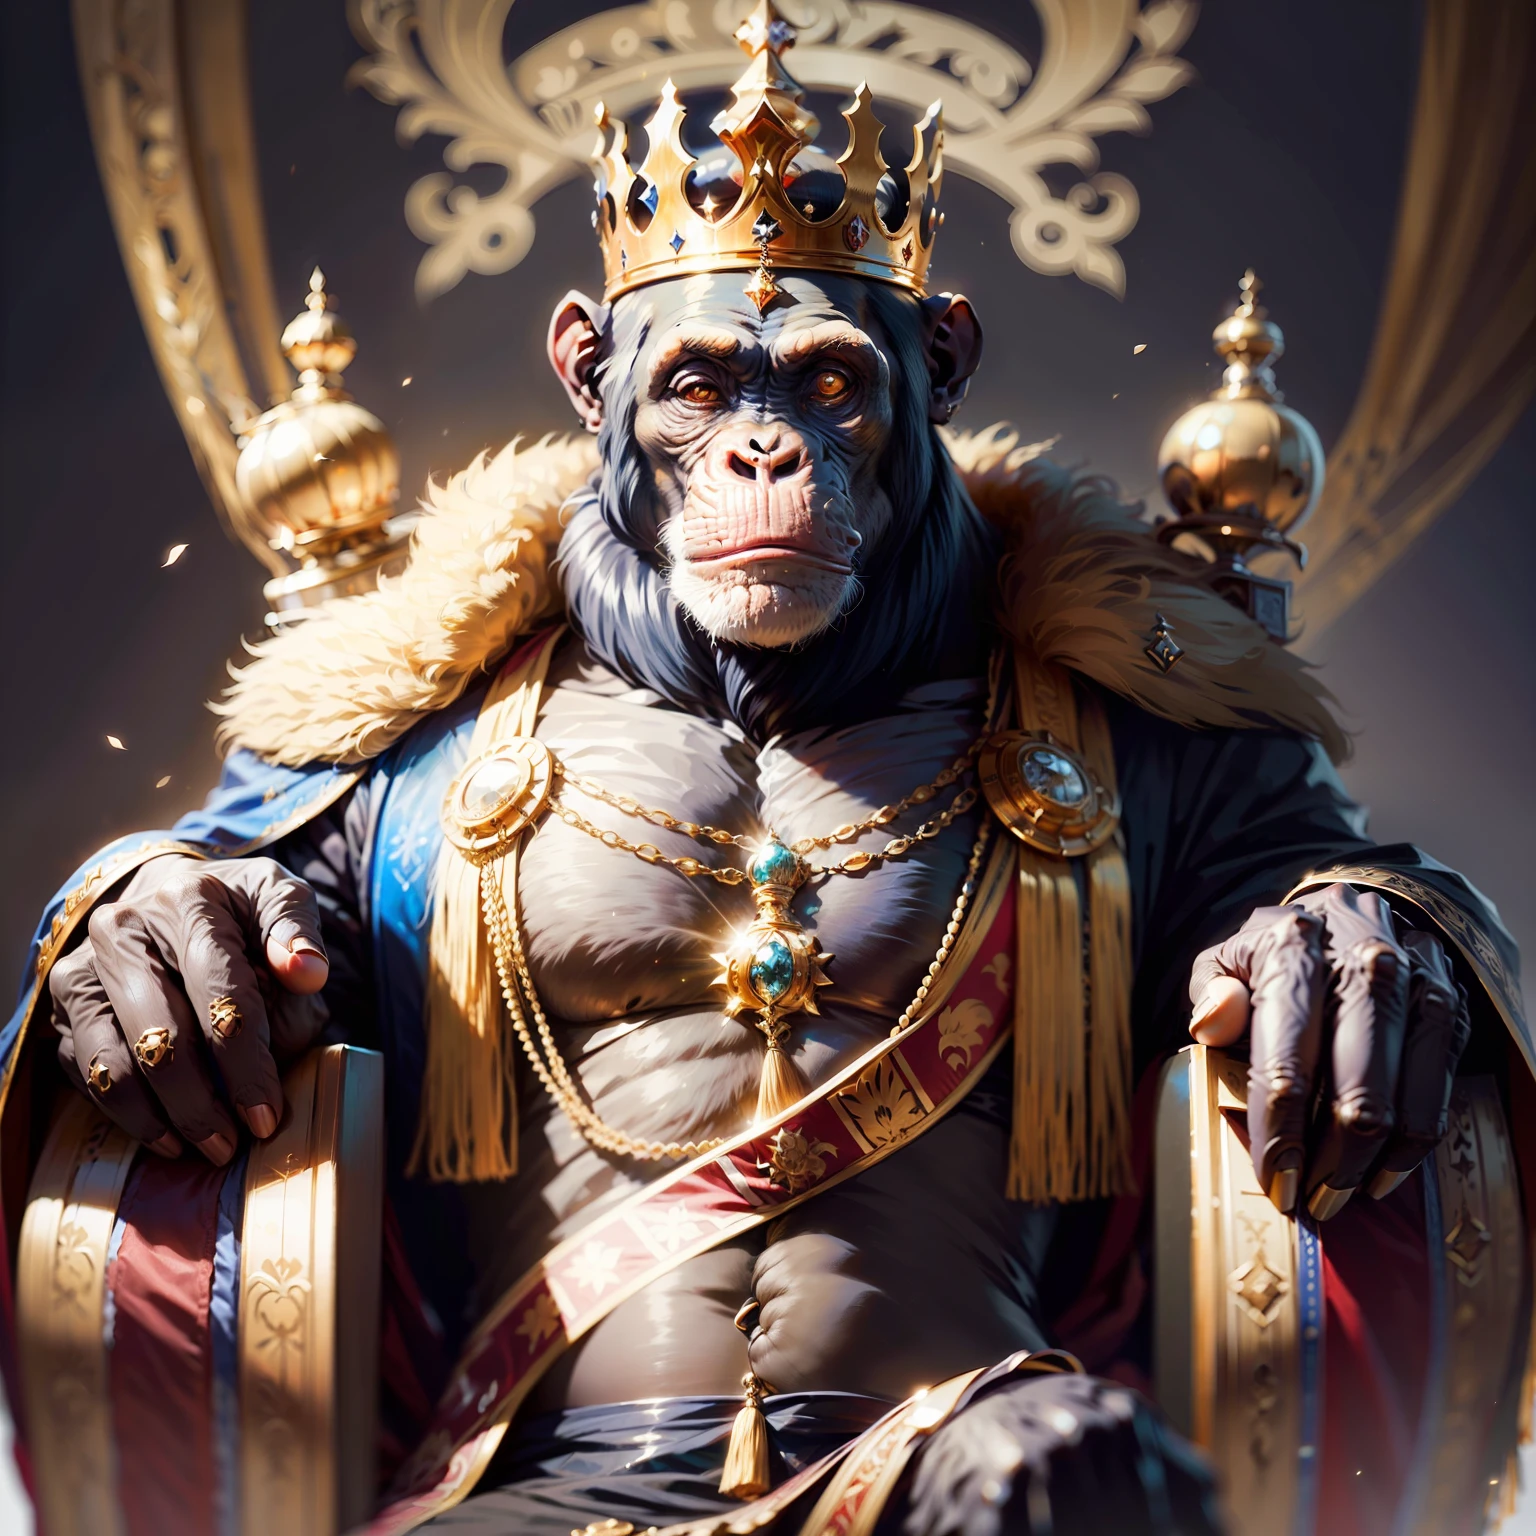 黑猩猩王,,((优雅的)),, 主权, 精神, 自信的, 配有皇冠和精致的道具, 黑色背景, 面对镜头,, 杰作,,((杰作))